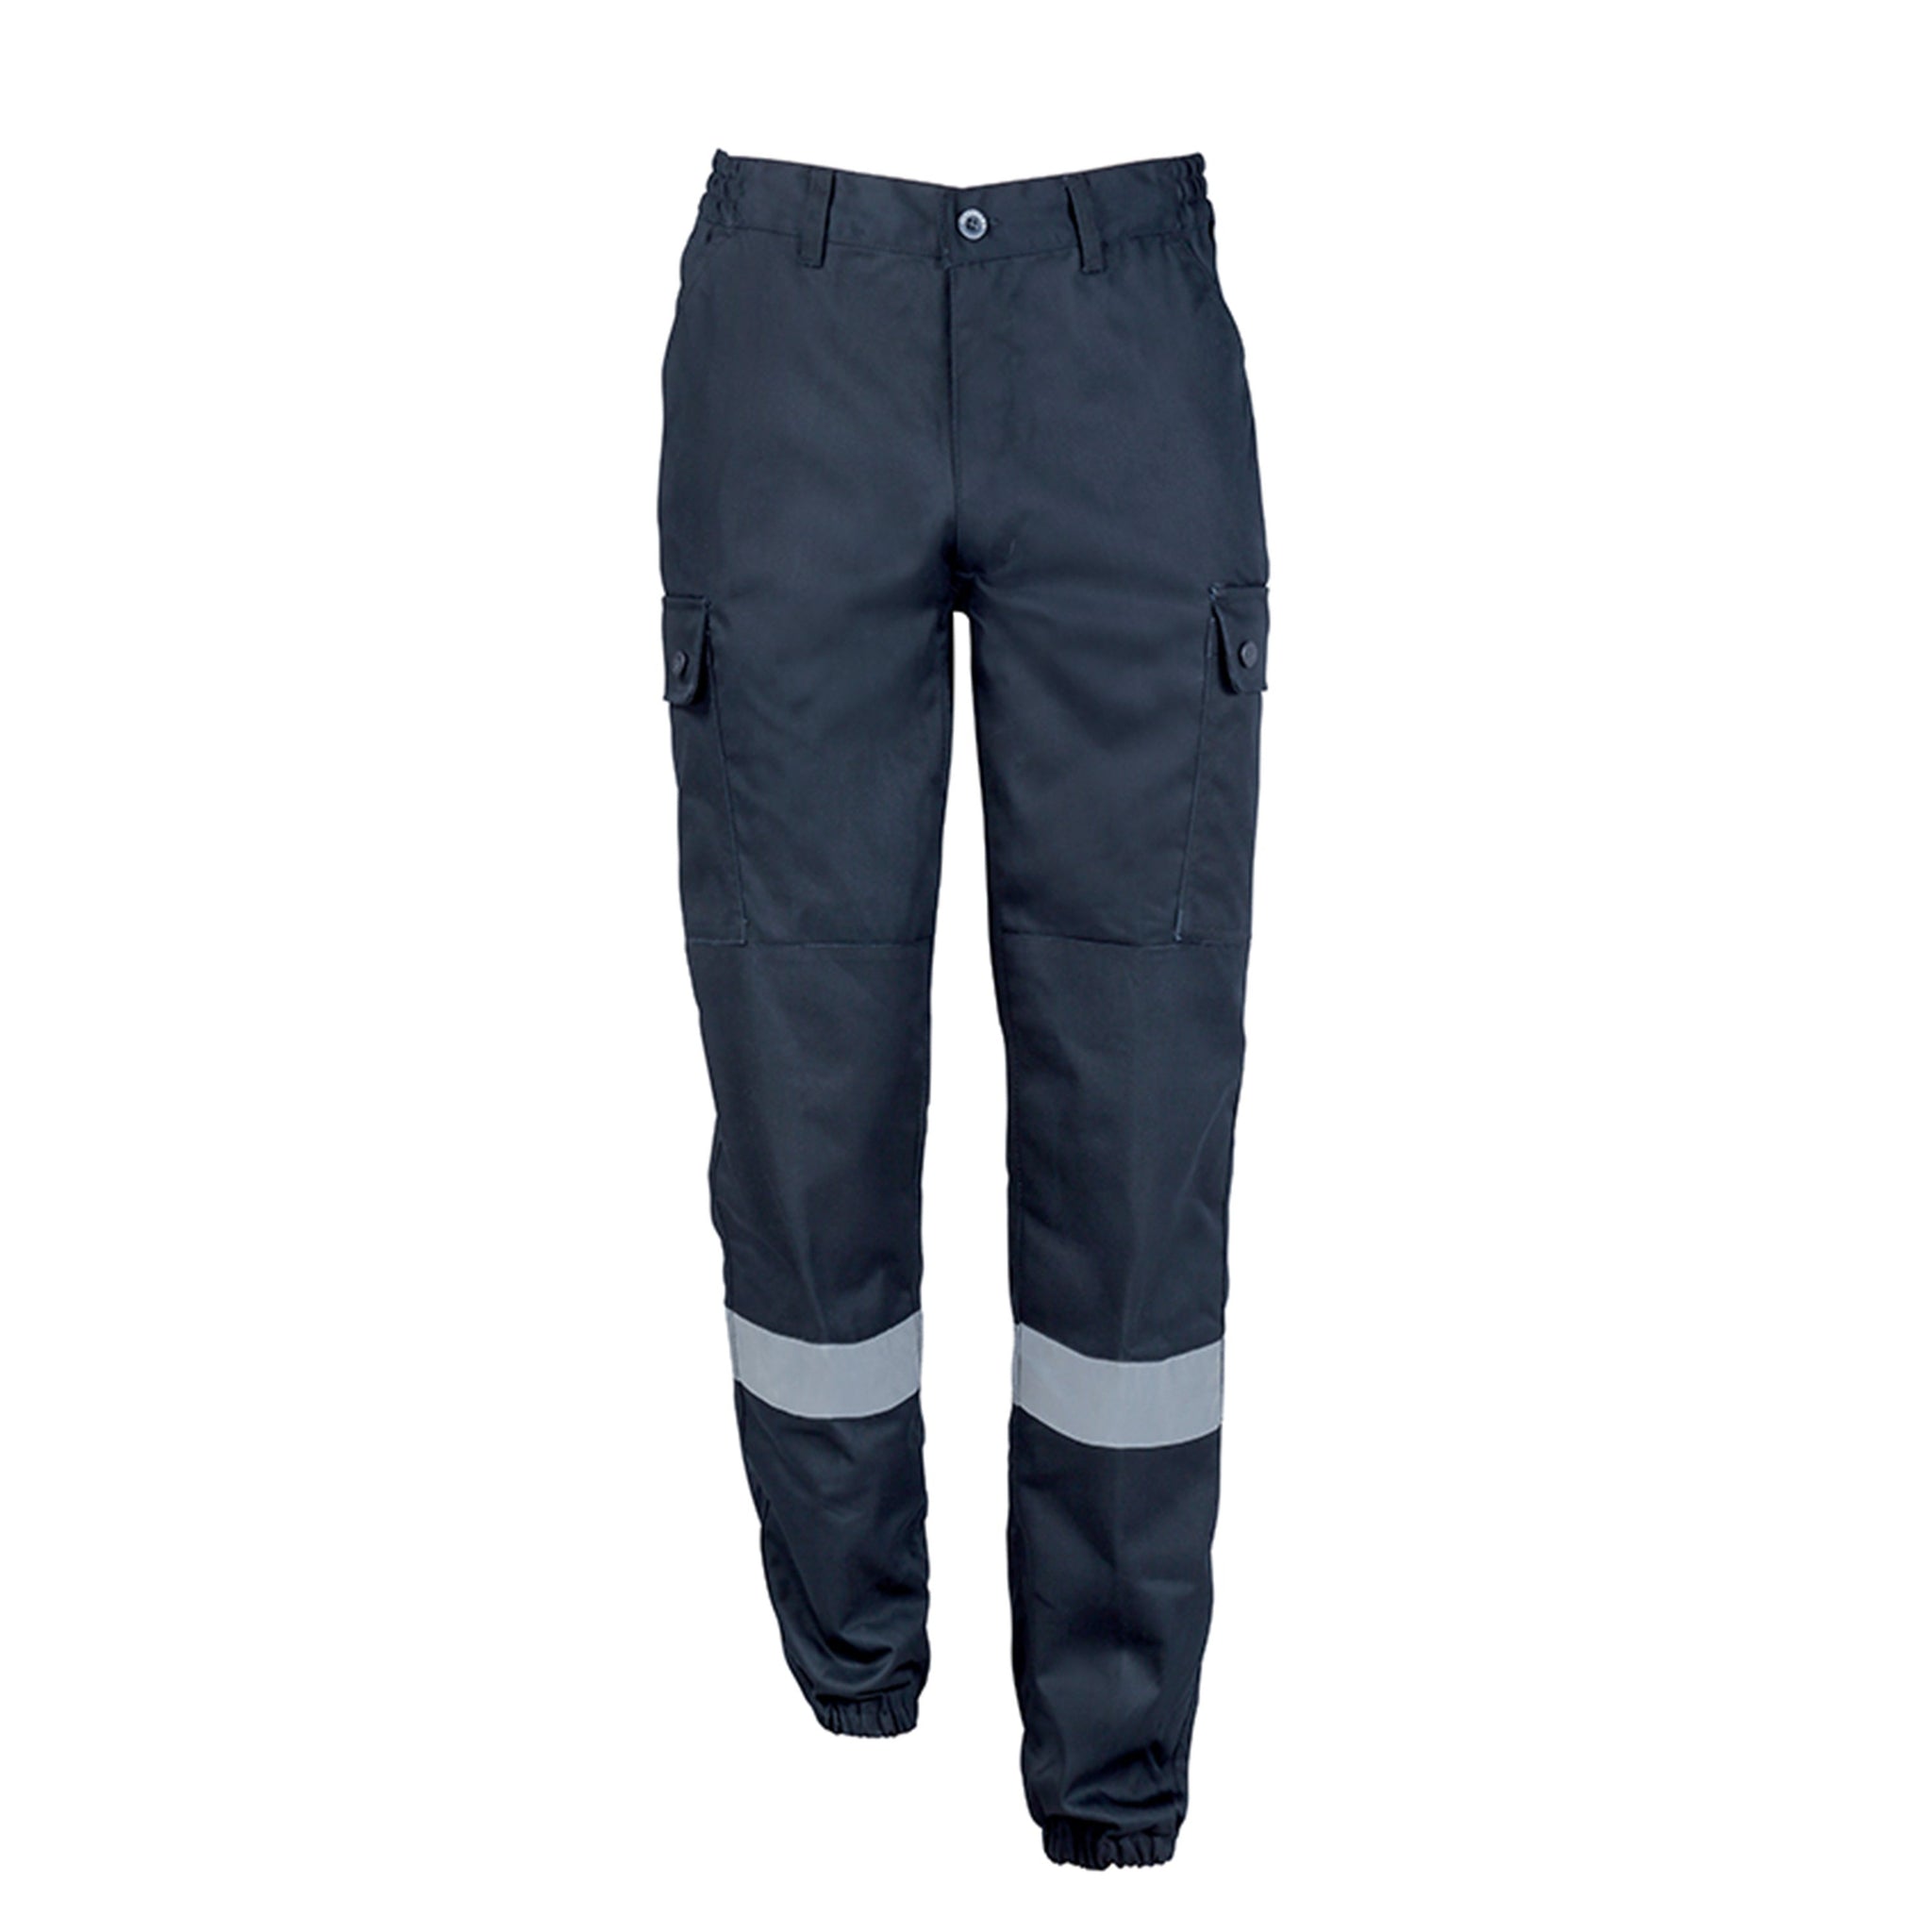 Pantalon de sécurité incendie marine avec bandes rétroréfléchissantes, en coton et polyester 4 poches - PANTALON INCENDIE CITYGUARD